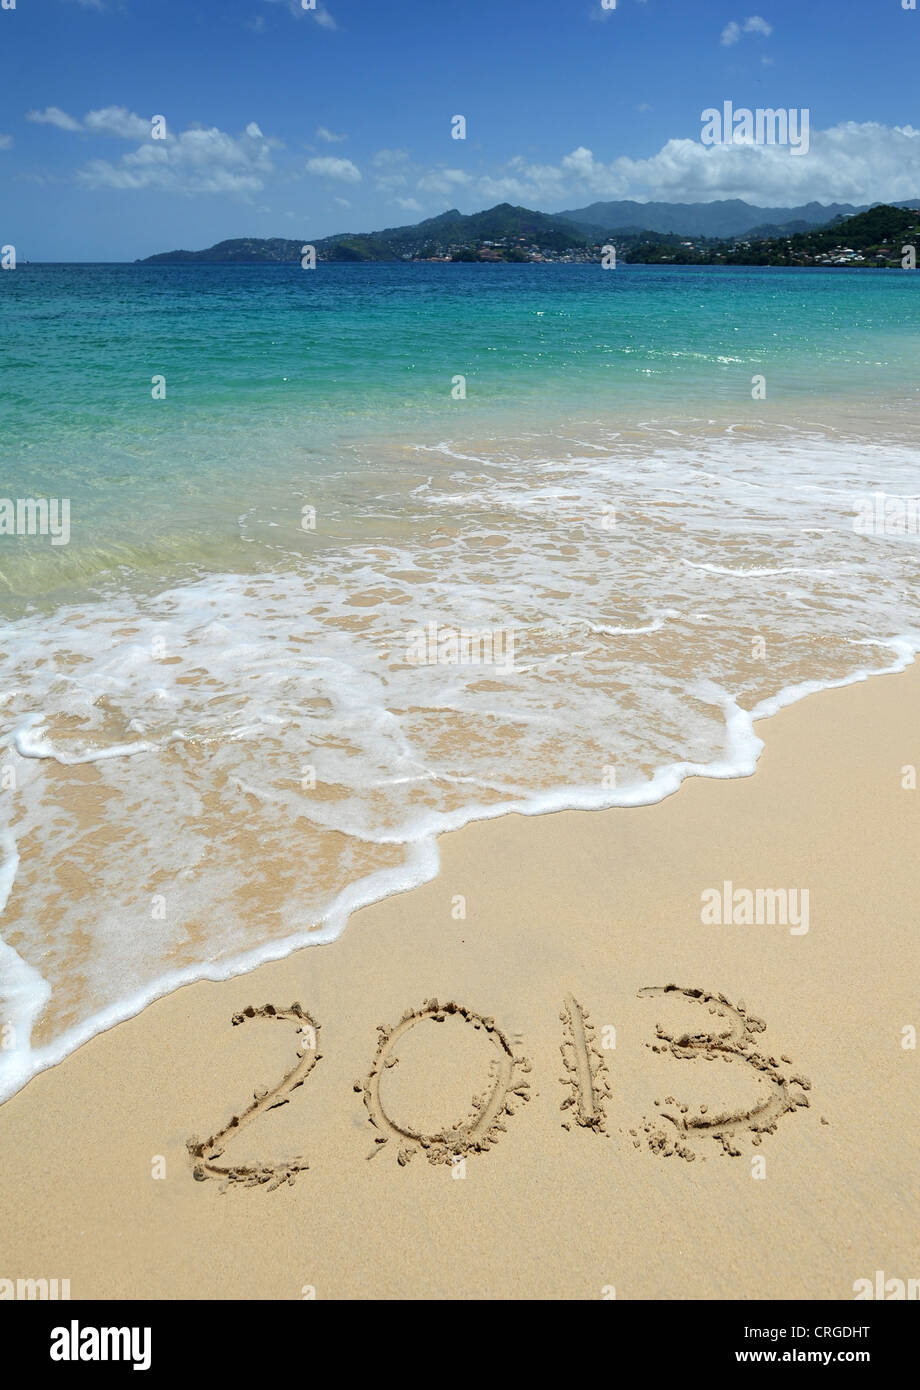 2013 escribe en la arena de la playa de Grand Anse mirando hacia St George's, la capital de Granada, Indias Occidentales. Foto de stock